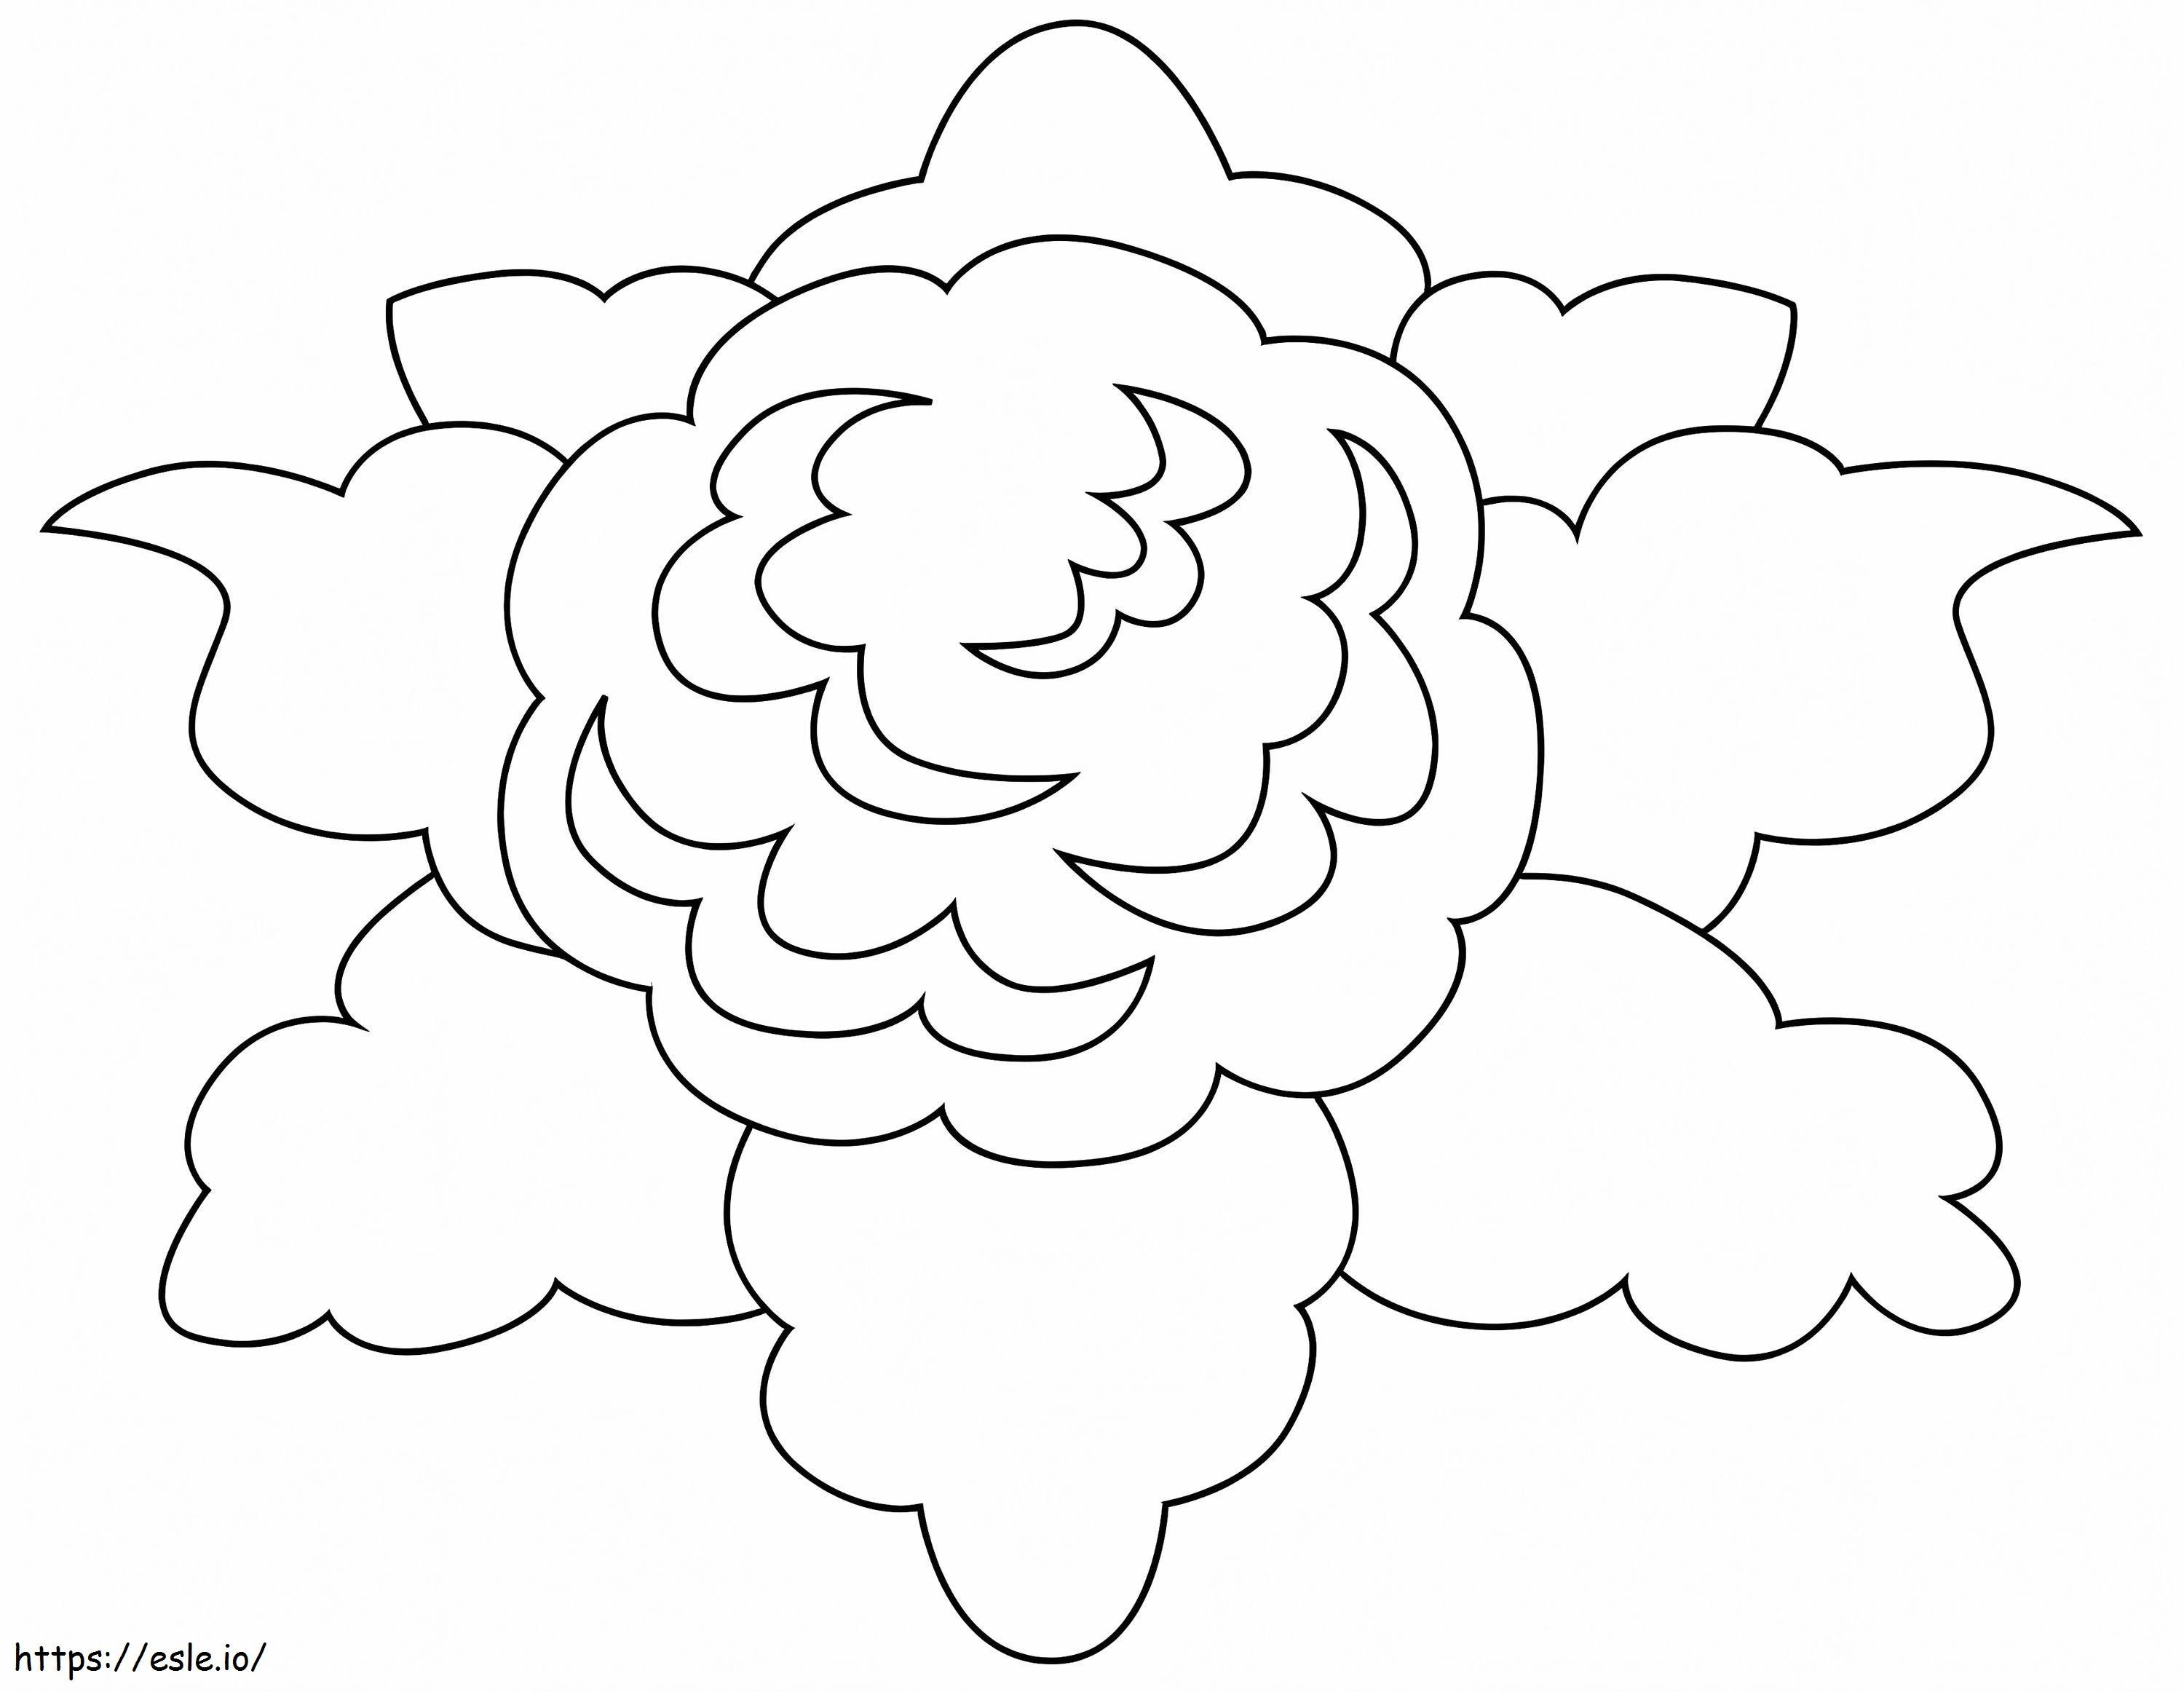 Coloriage Chou-fleur simple à imprimer dessin